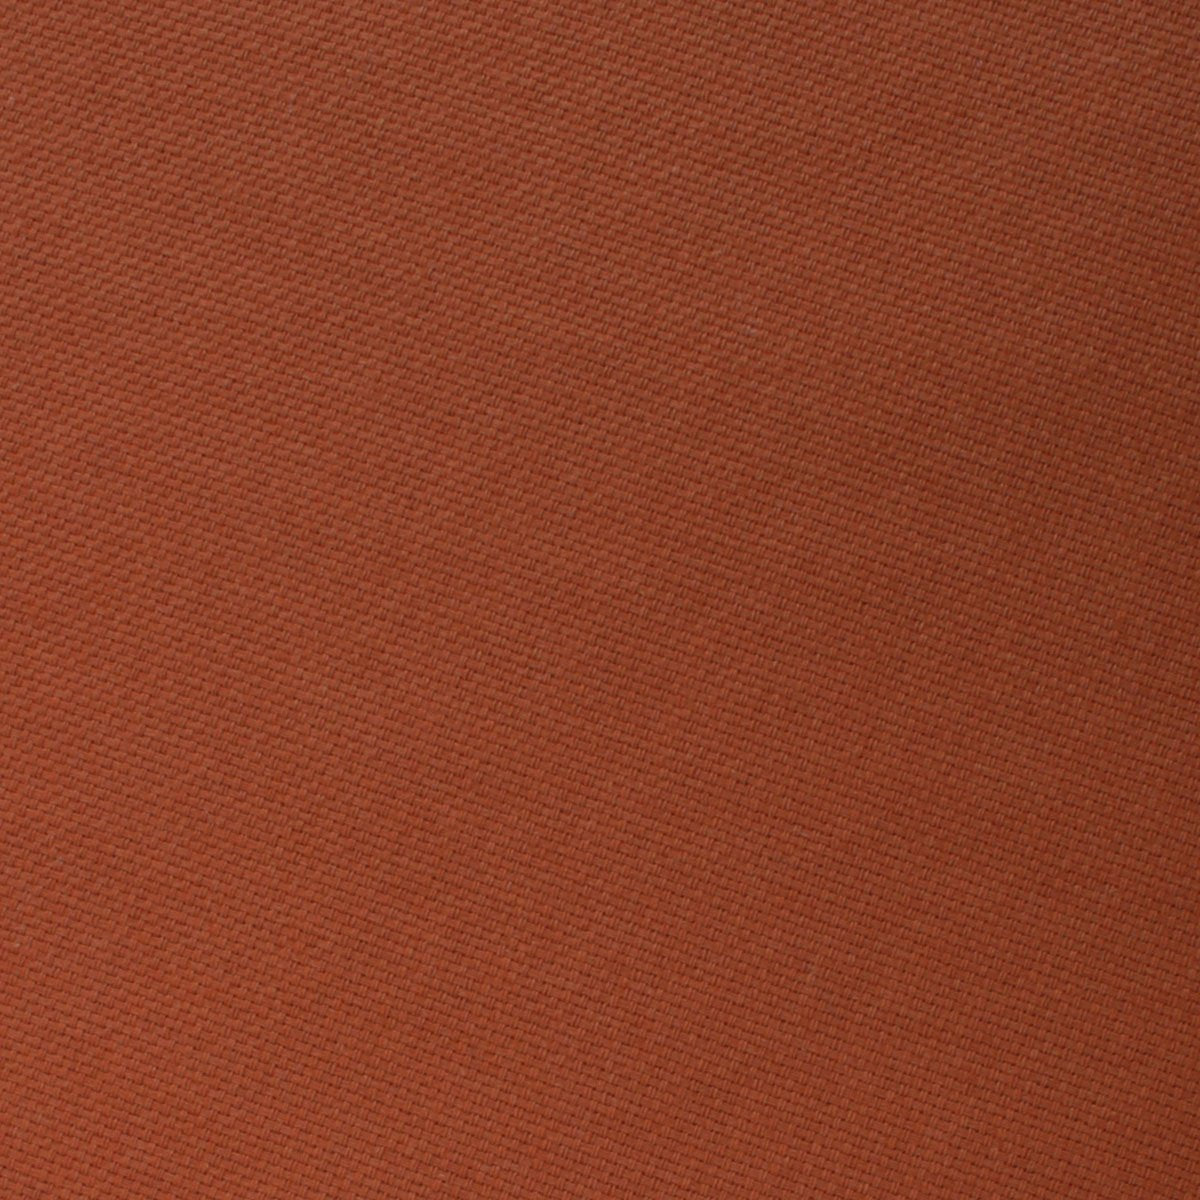 Burnt Terracotta Orange Linen Necktie Fabric